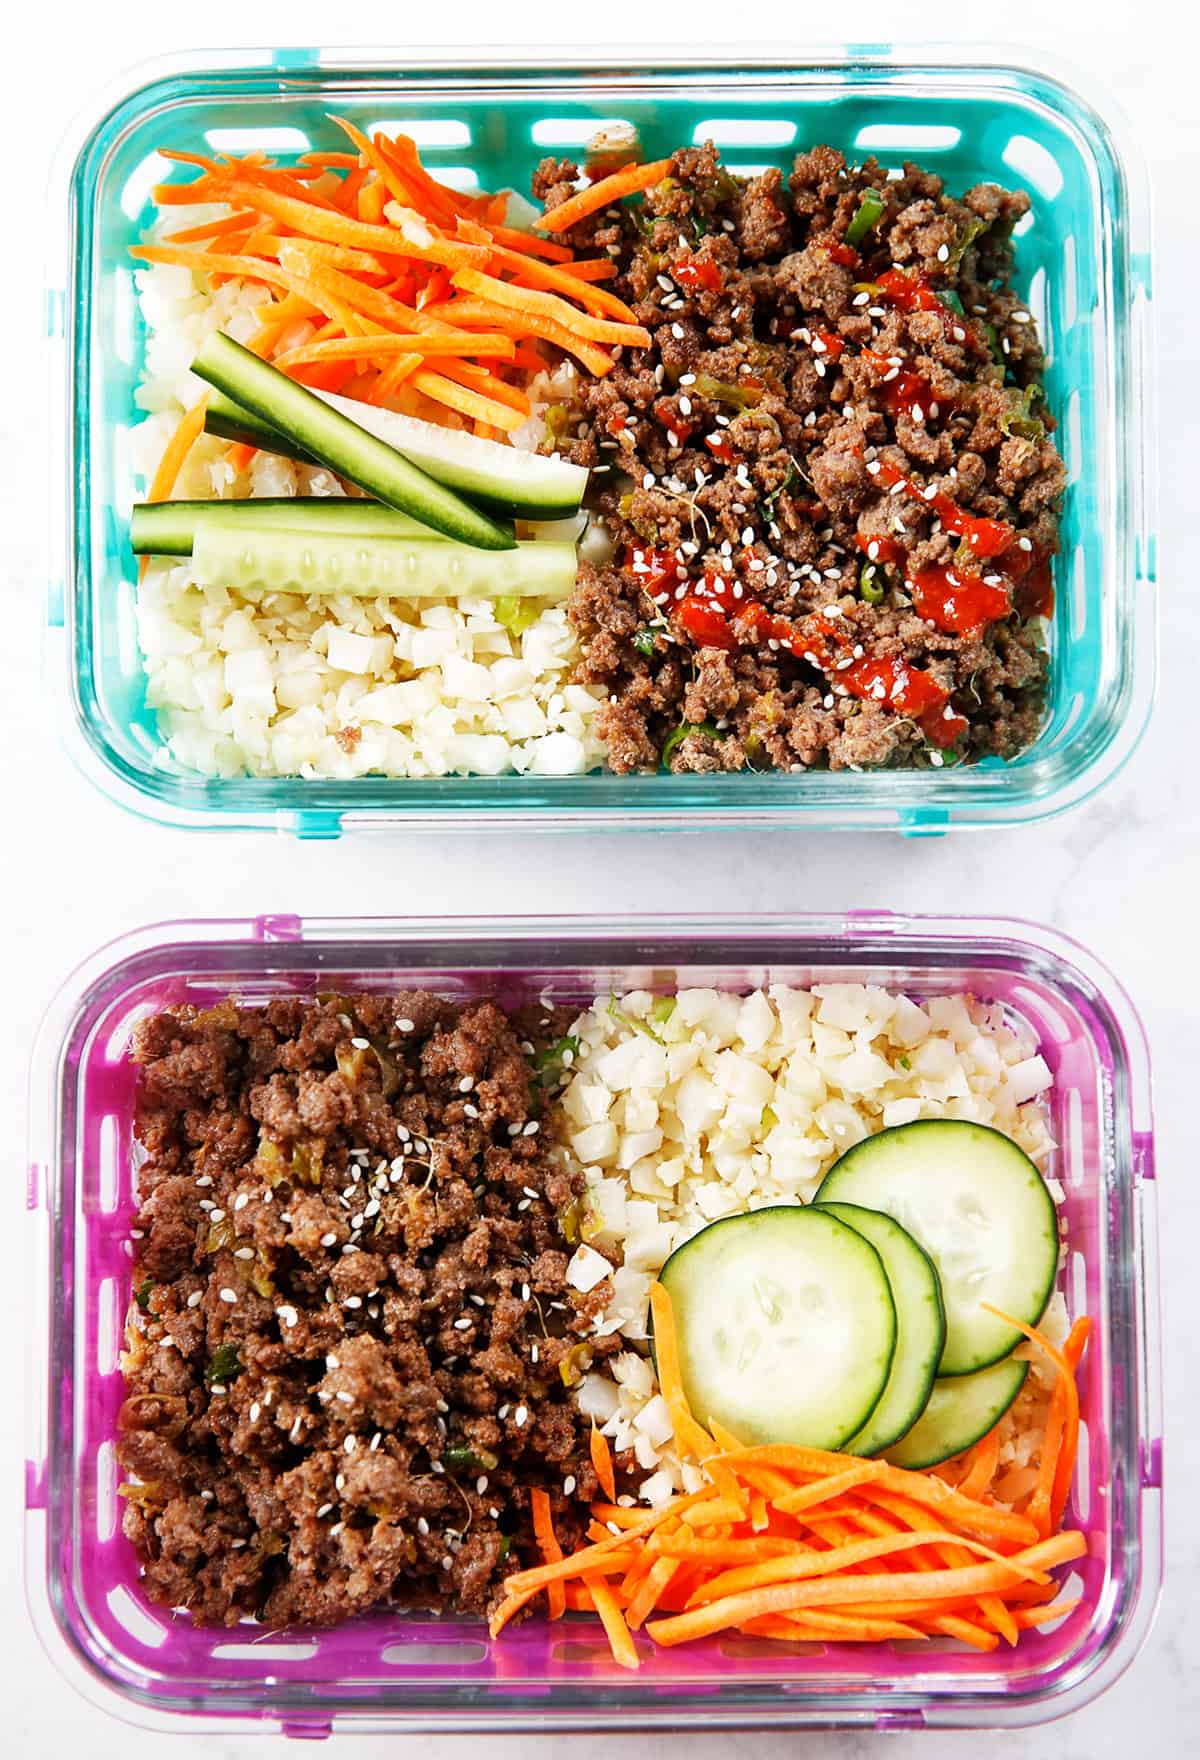 Korean Lunch Box Ideas - Korean Styles